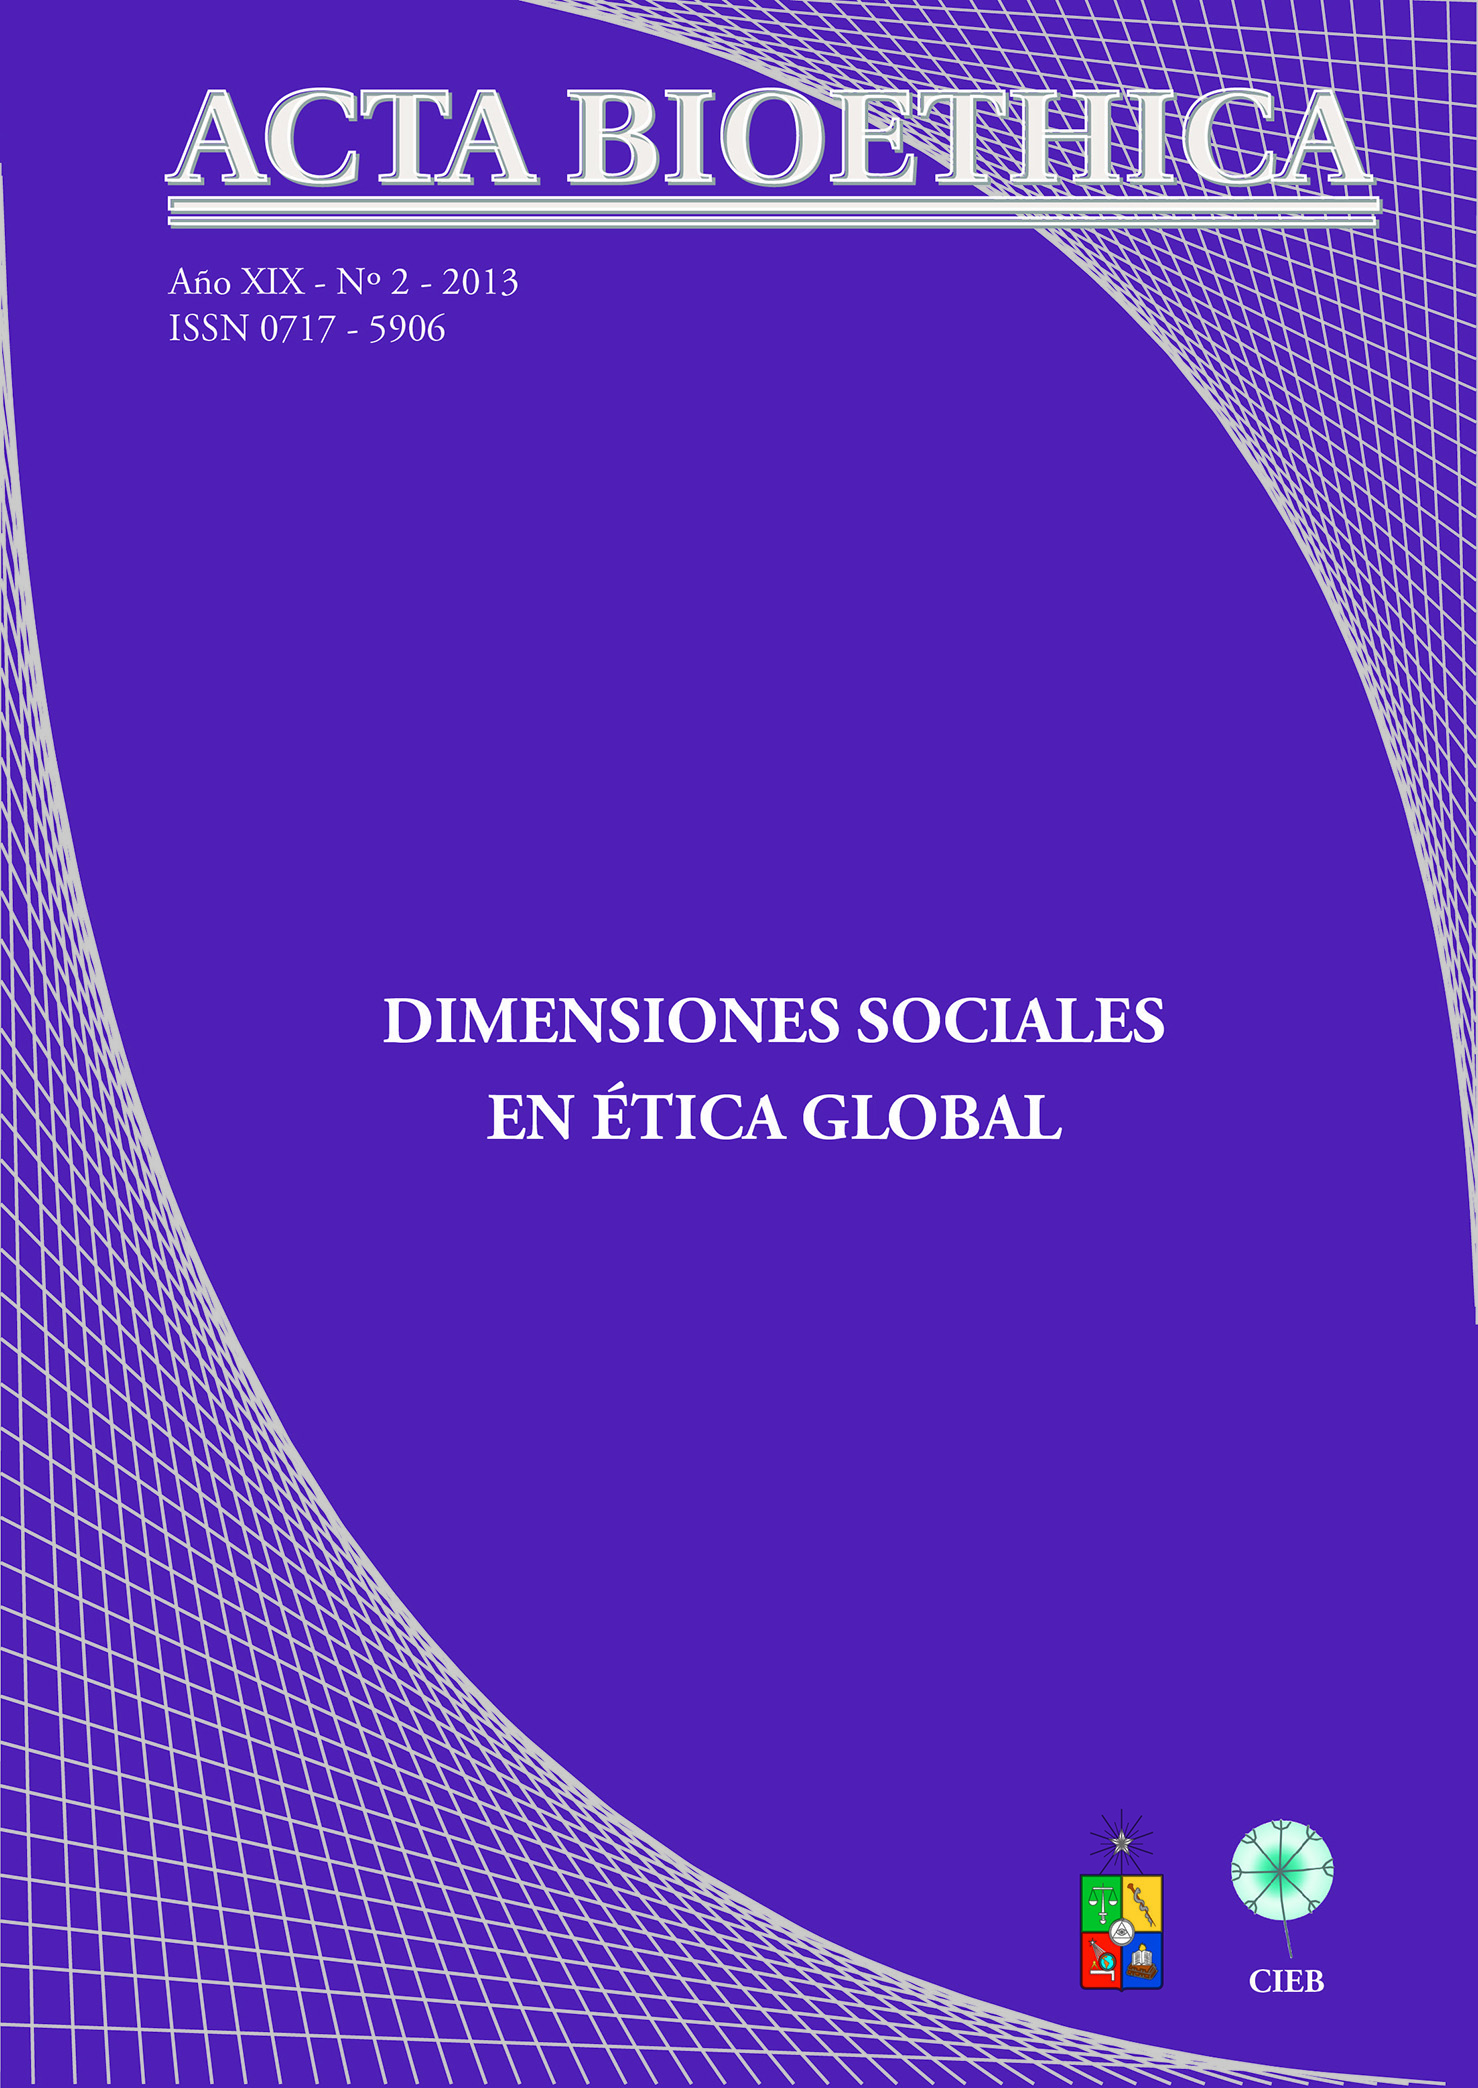 							Ver Vol. 19 Núm. 2 (2013): Dimensiones Sociales en Ética Global
						